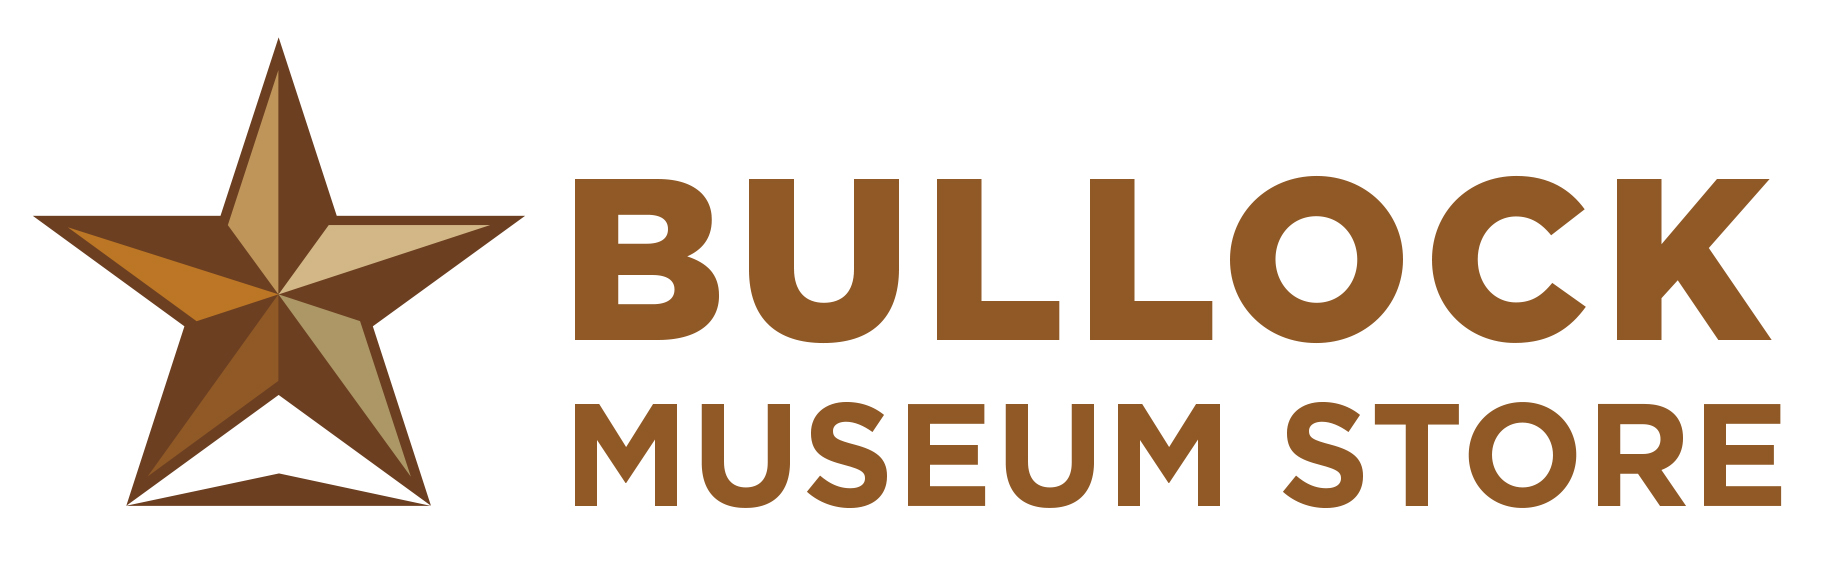 Texas Bullock Museum Logo